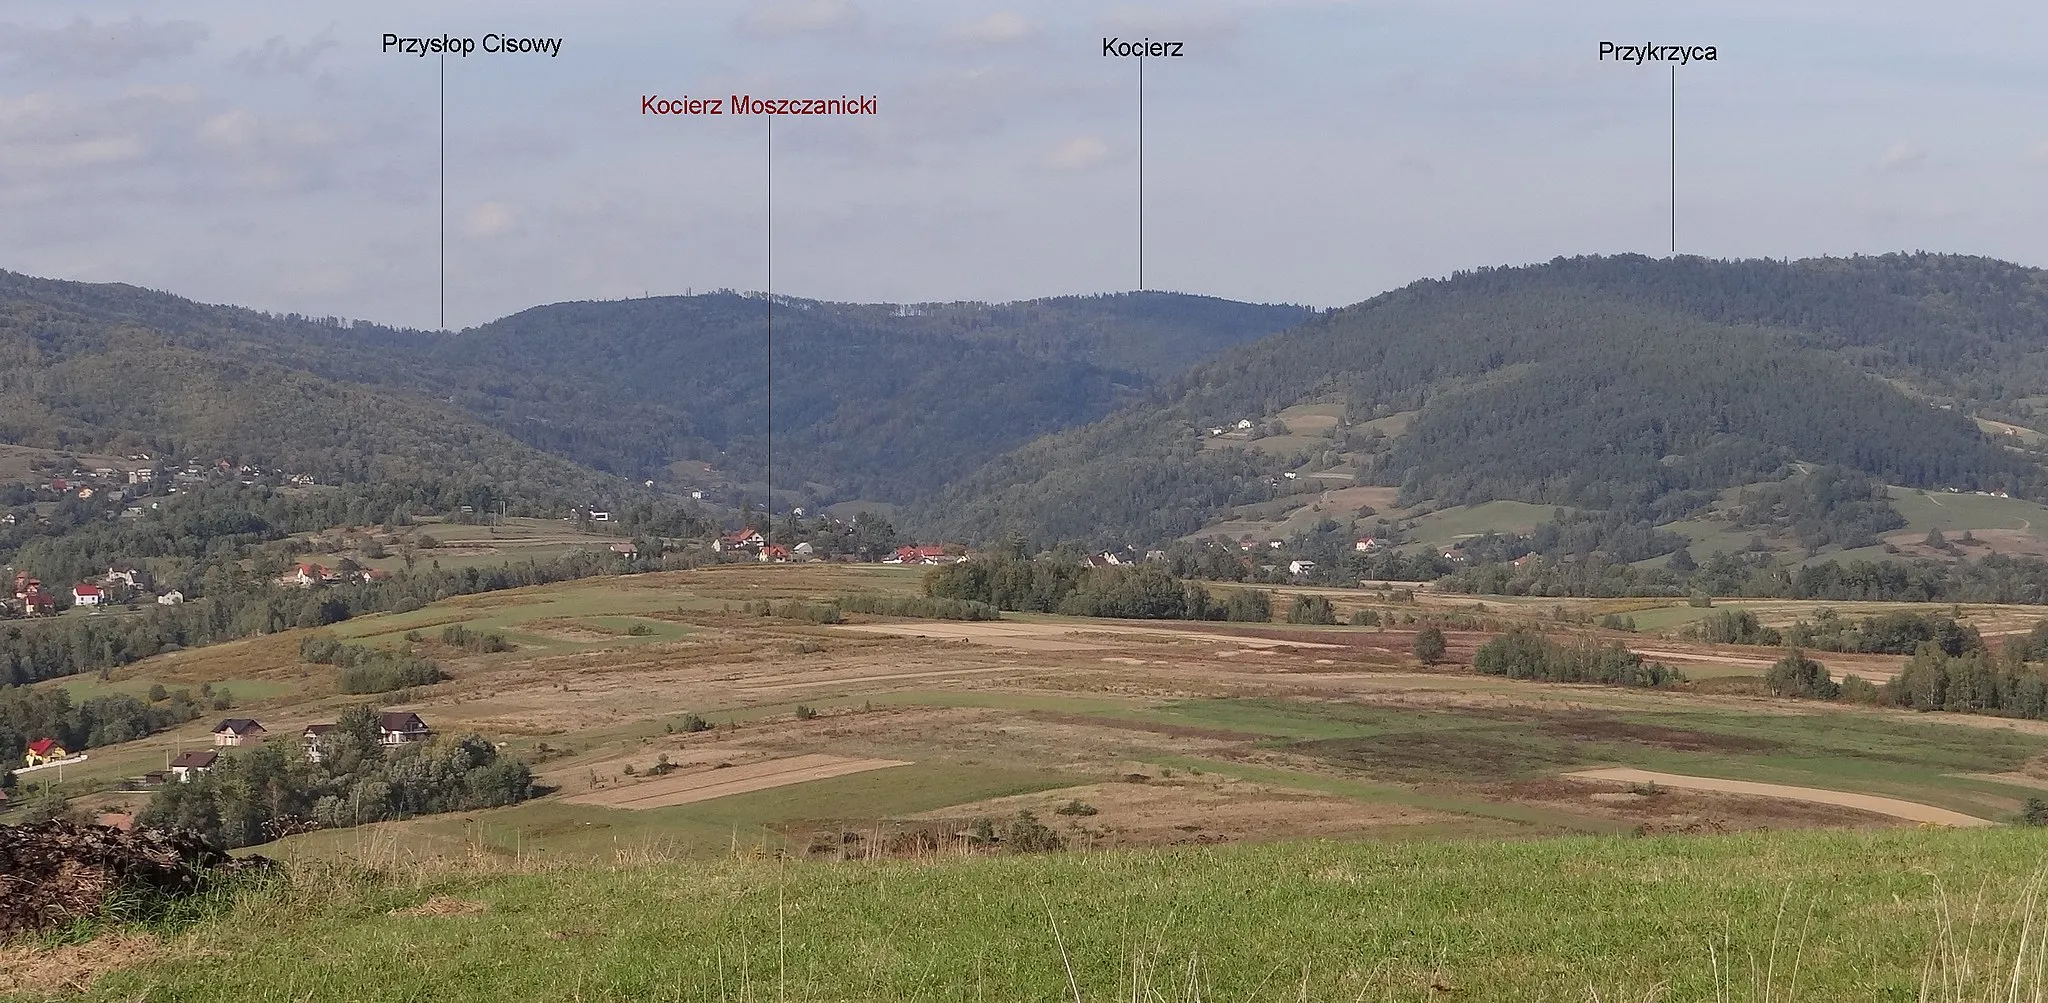 Photo showing: Widok od południowej strony na dolinę Kocierzanki, Kocierz i Przykrzycę